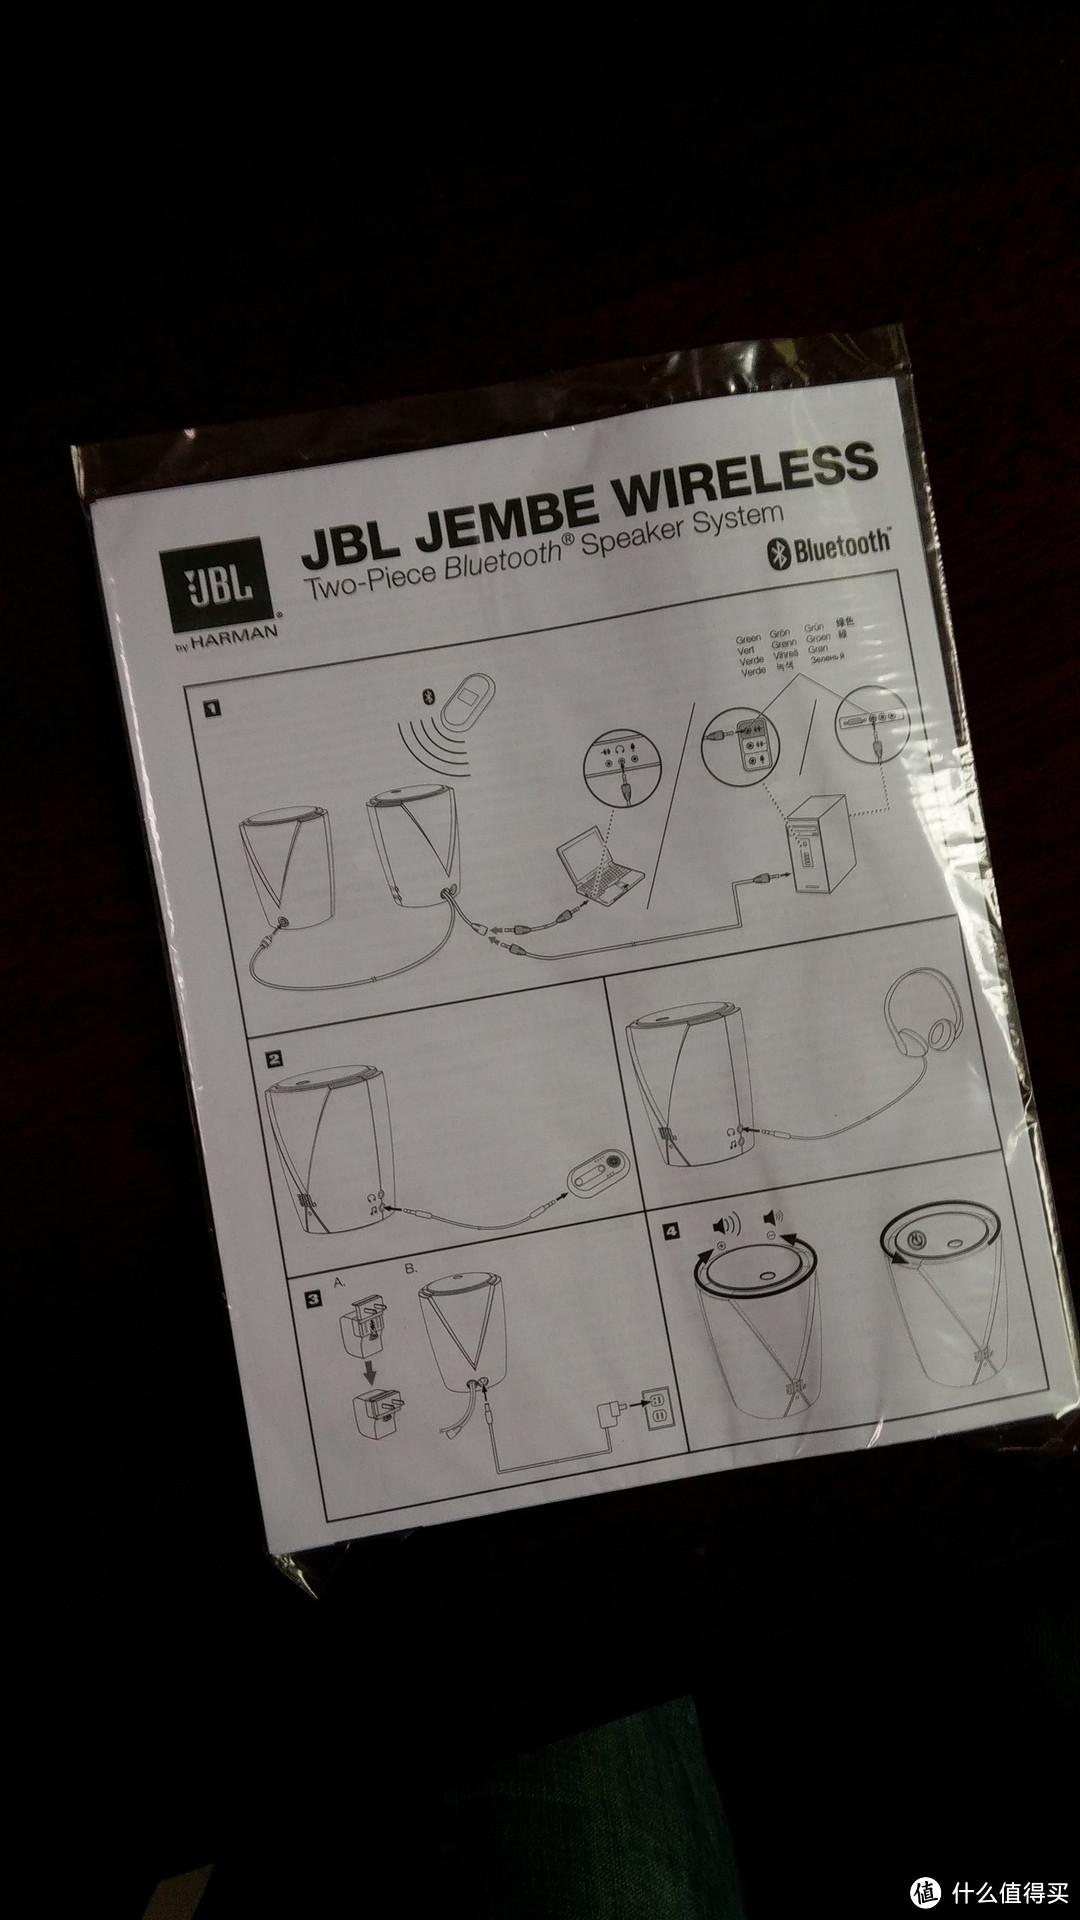 JBL JEMBE EBTCH 蓝牙无线音箱，还是做PC音箱比较在行